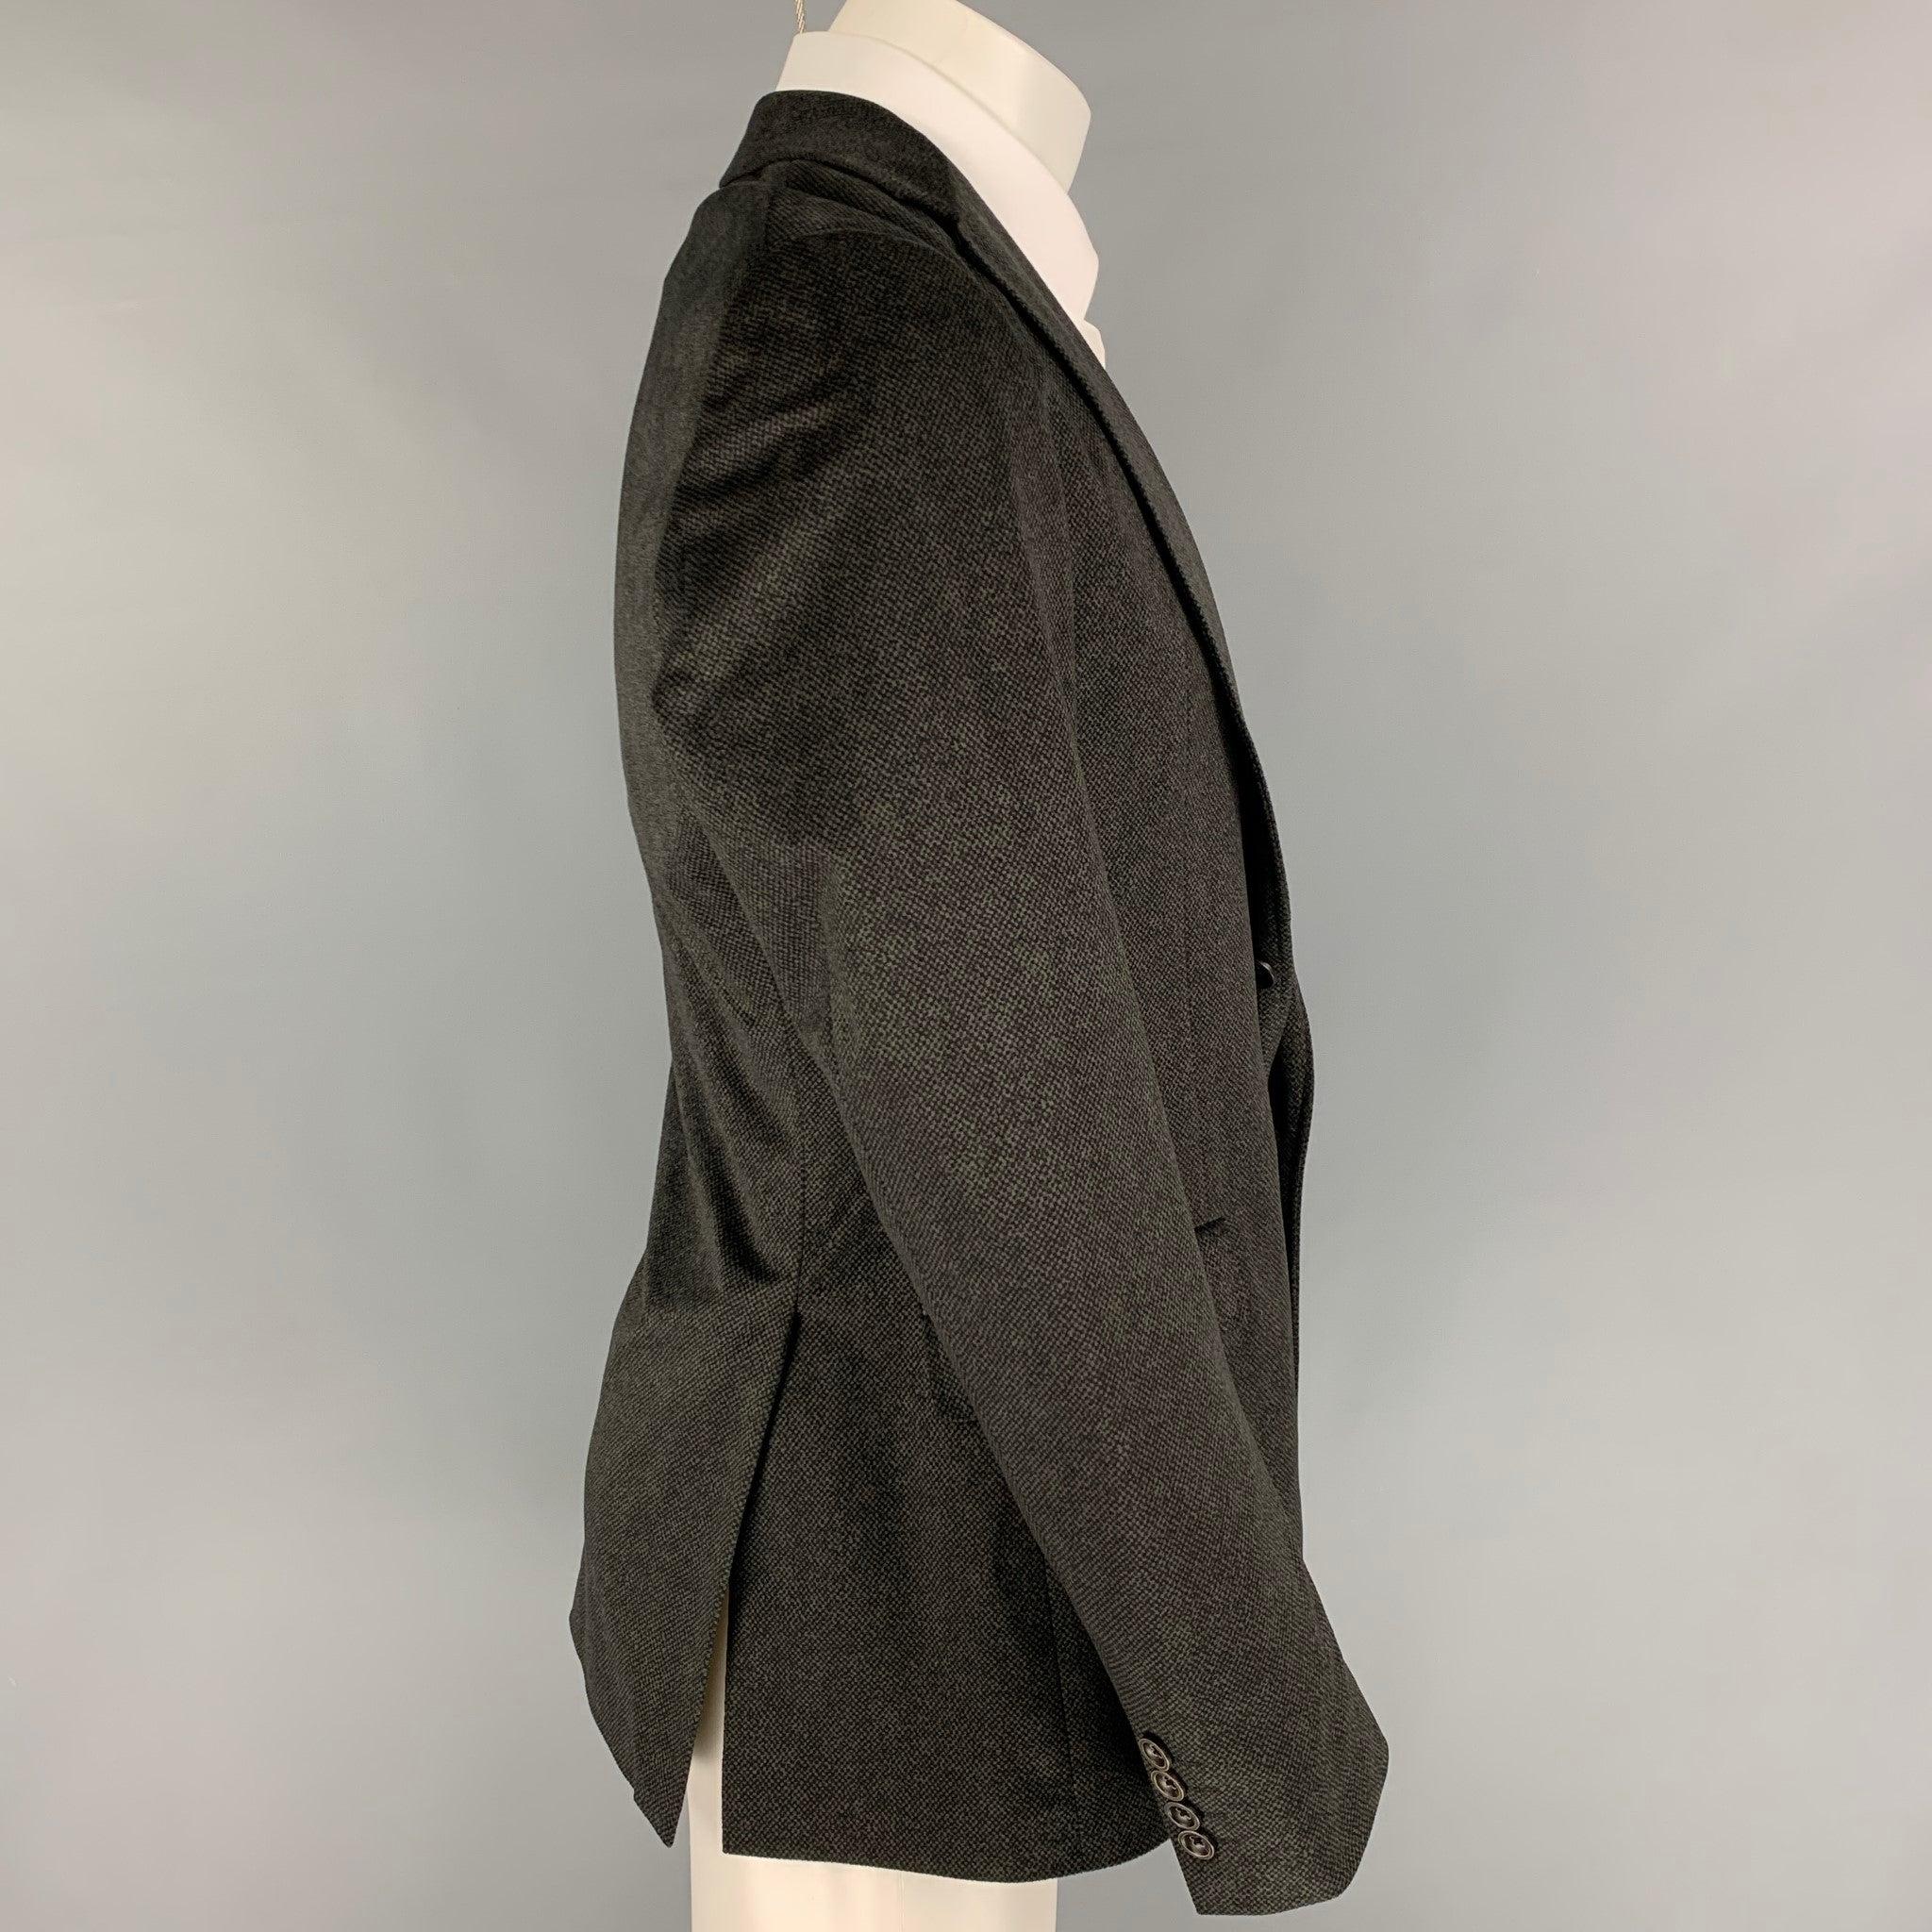 Le manteau de sport ARMANI COLLEZIONI se présente en polyester anthracite/noir avec une doublure complète, un revers à cran, des poches à rabat, une double fente arrière et une fermeture à double bouton.
Très bien
Etat d'occasion.  

Marqué :   40